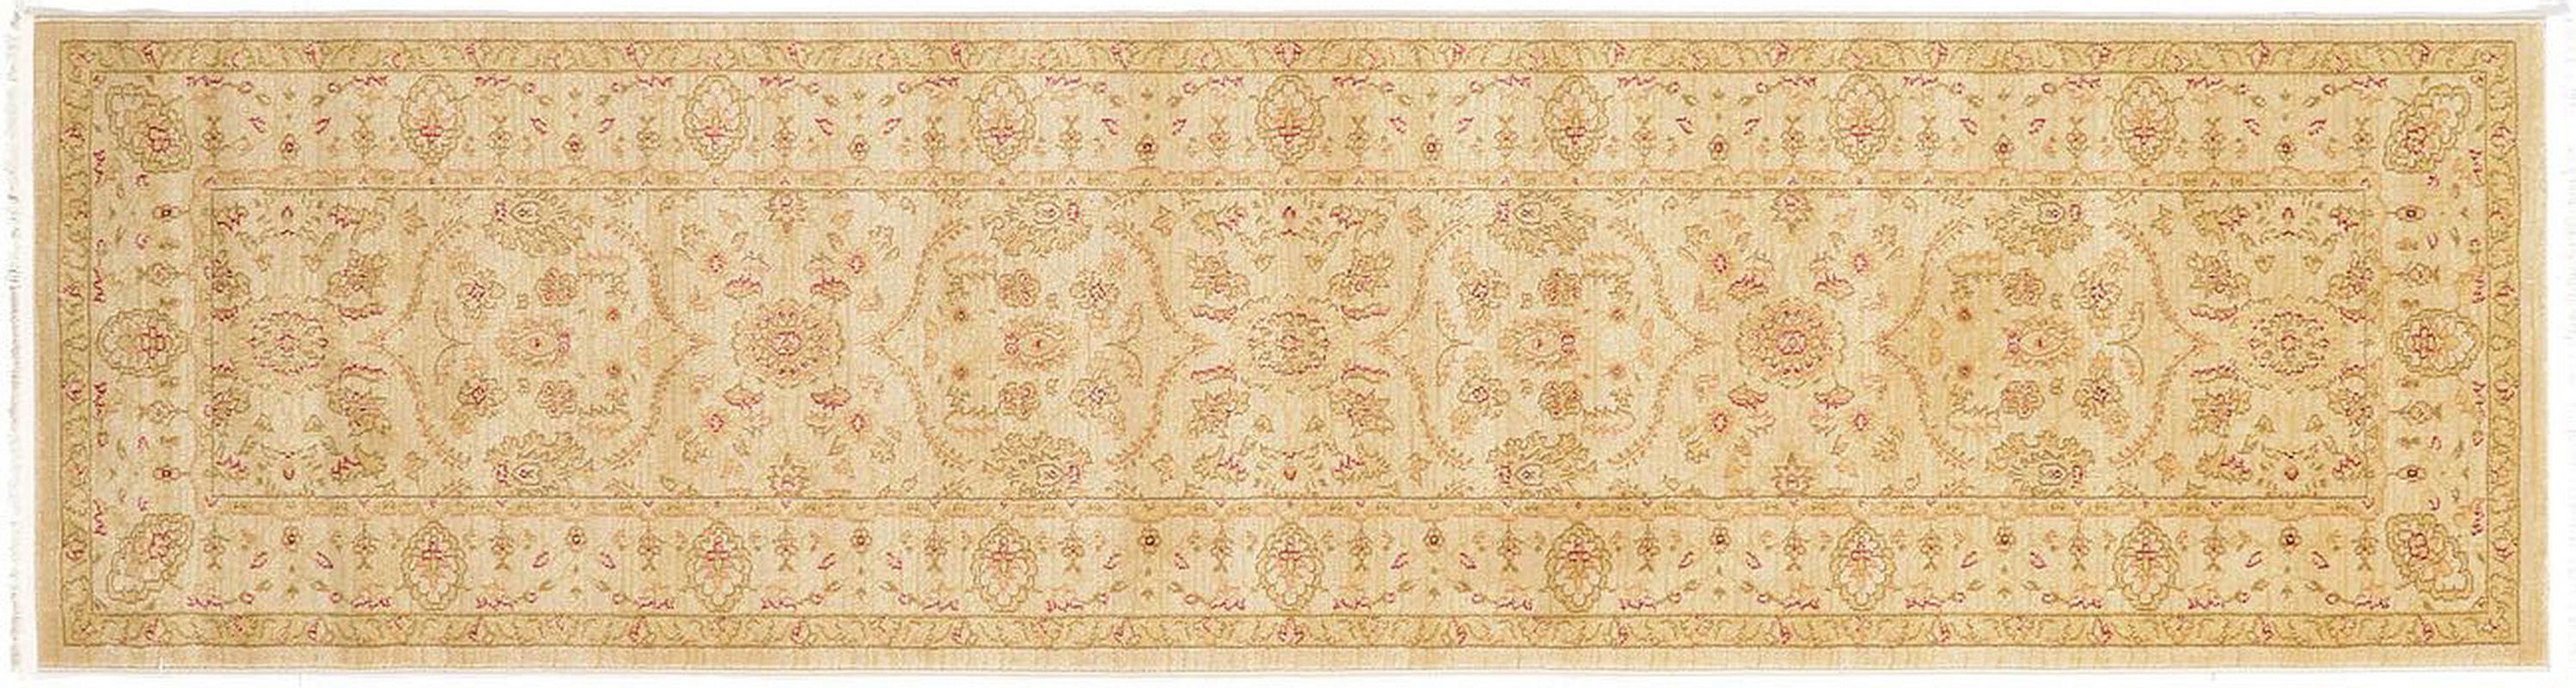 古典经典地毯ID9680